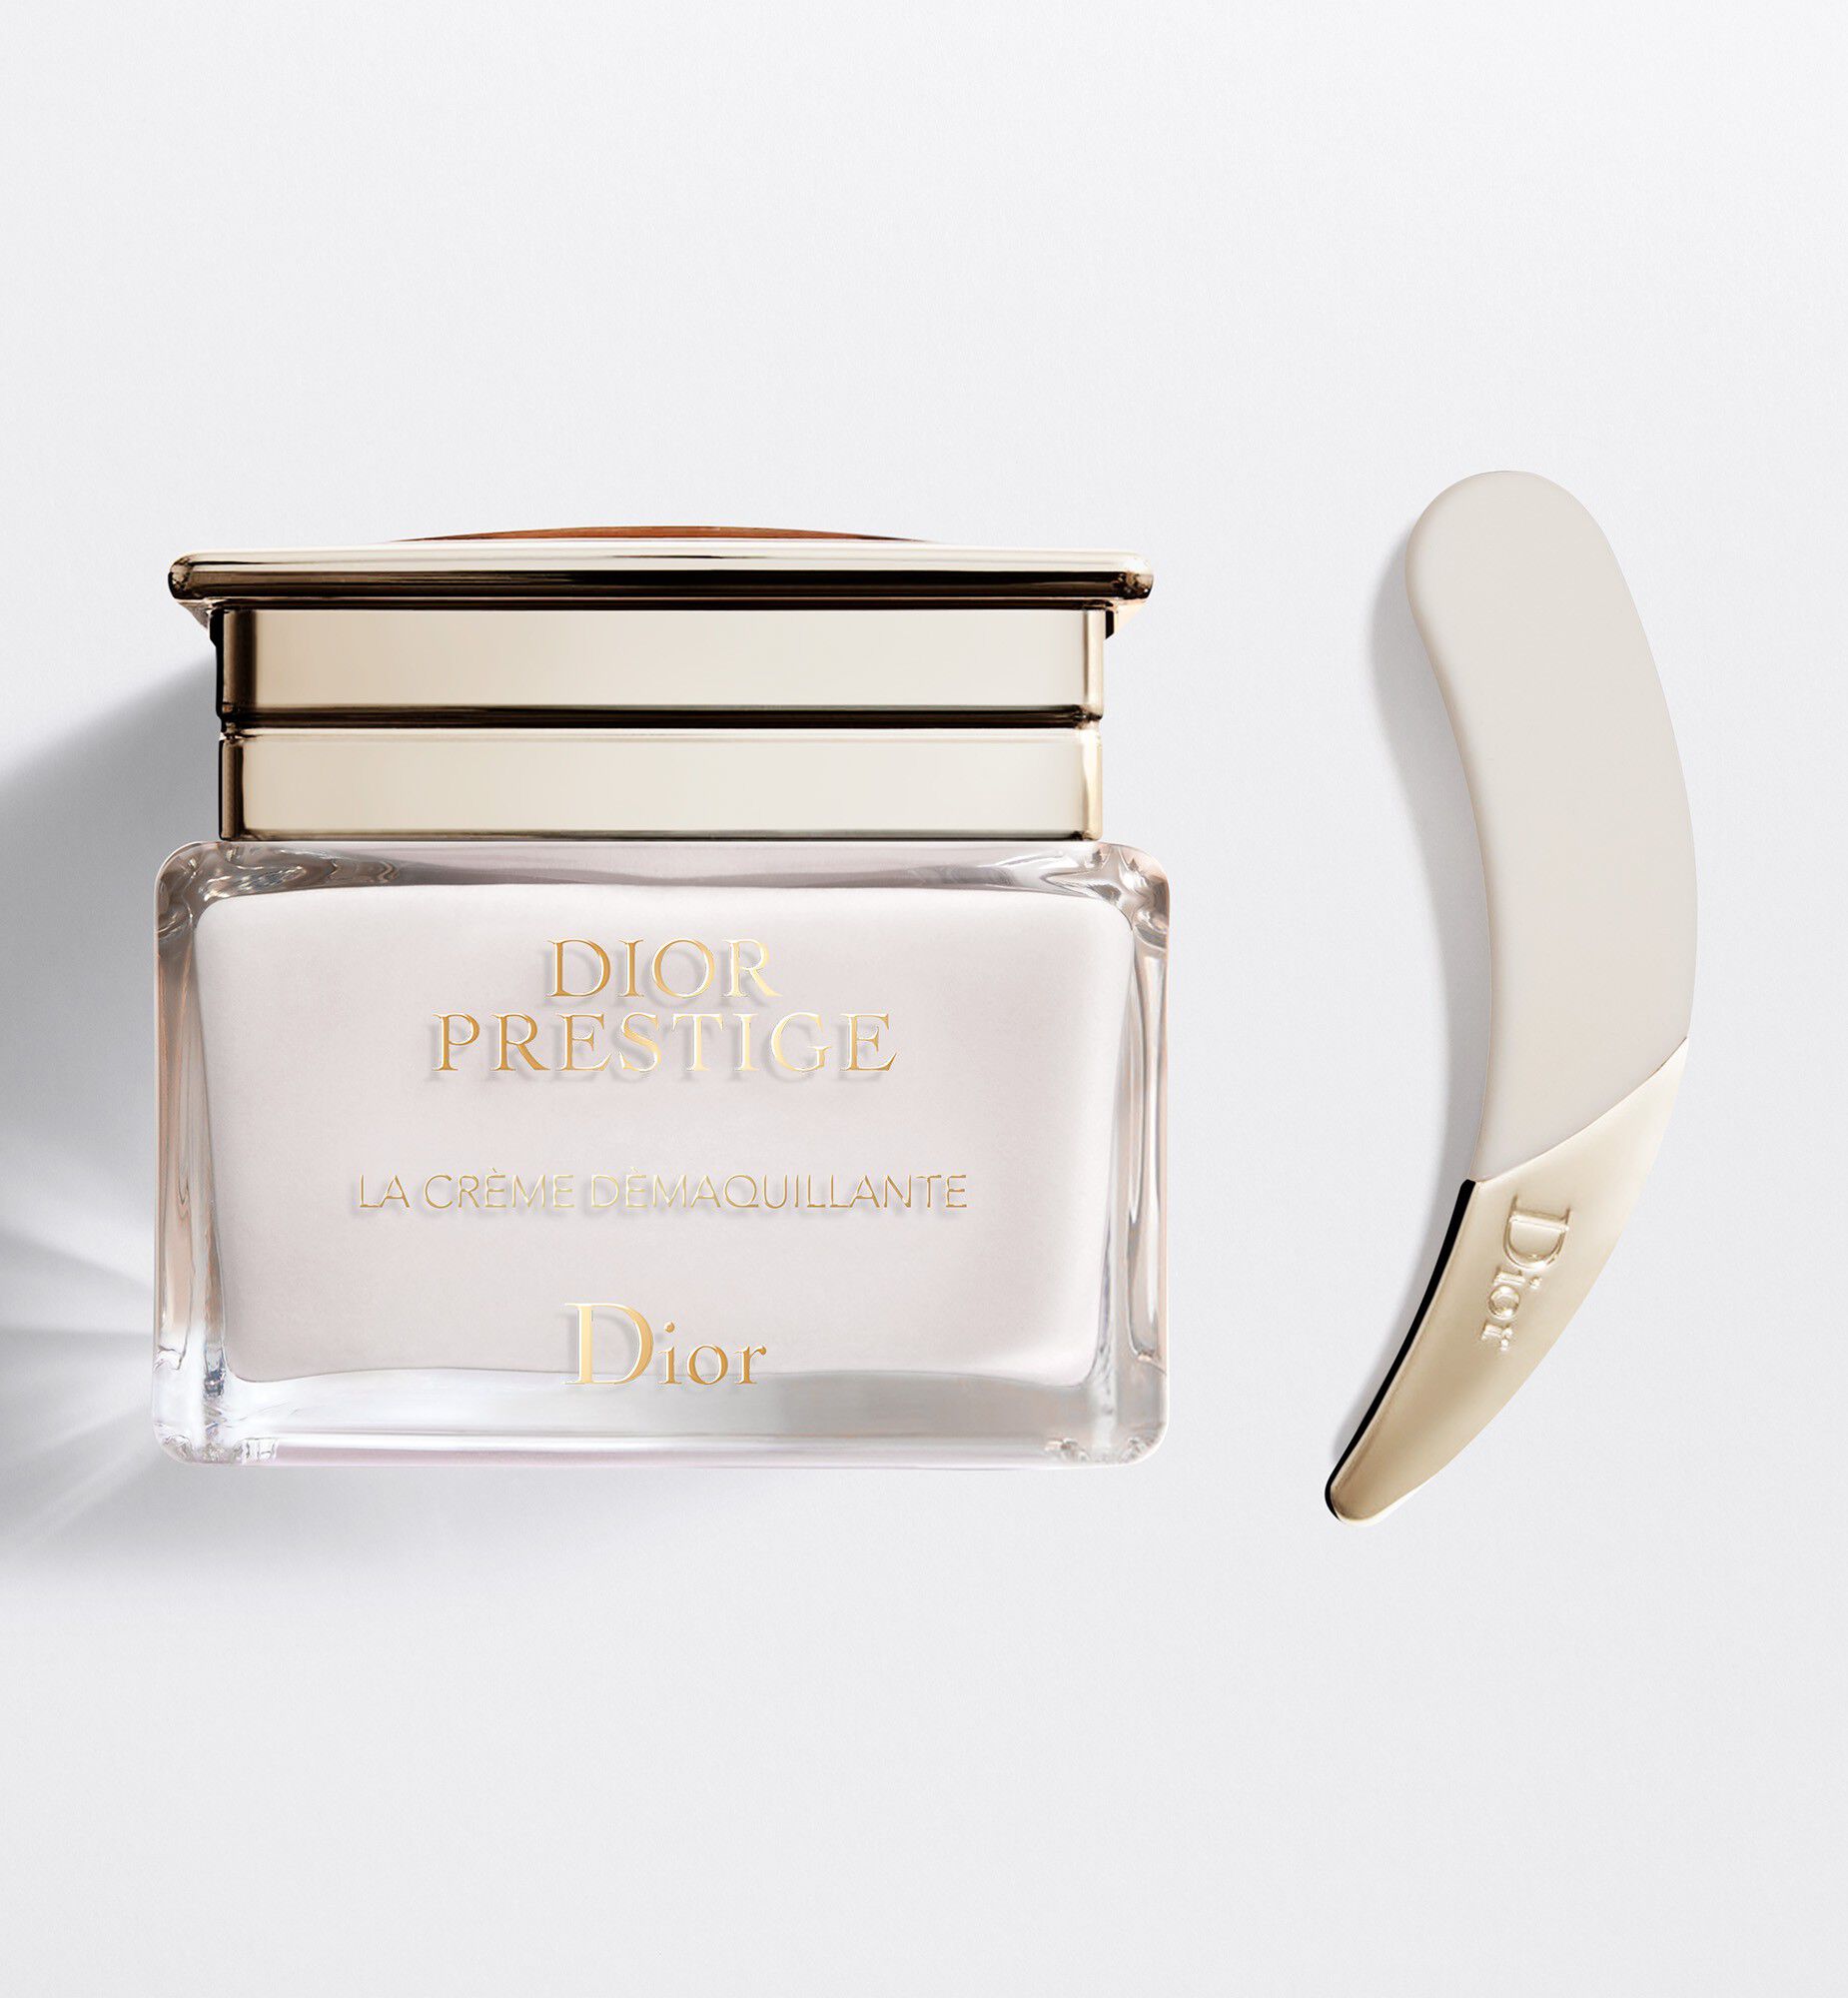 Dior Prestige Skincare Set Serum Lotion and AntiAging Cream  DIOR